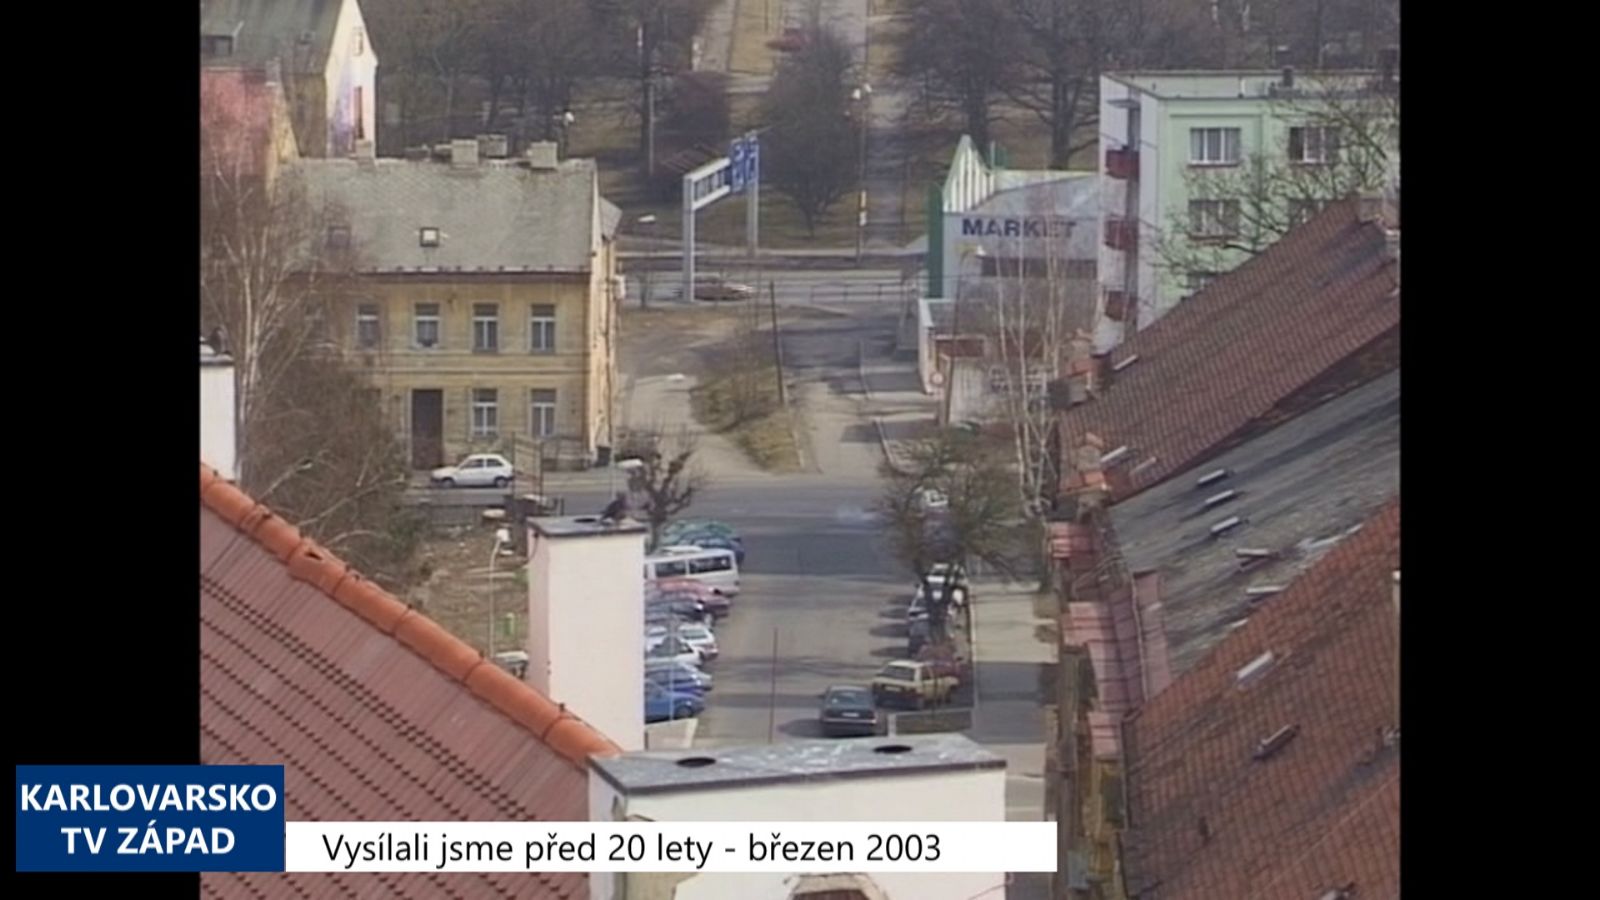 2003 – Cheb: Město najalo na zkoušku dva exekutory (TV Západ)